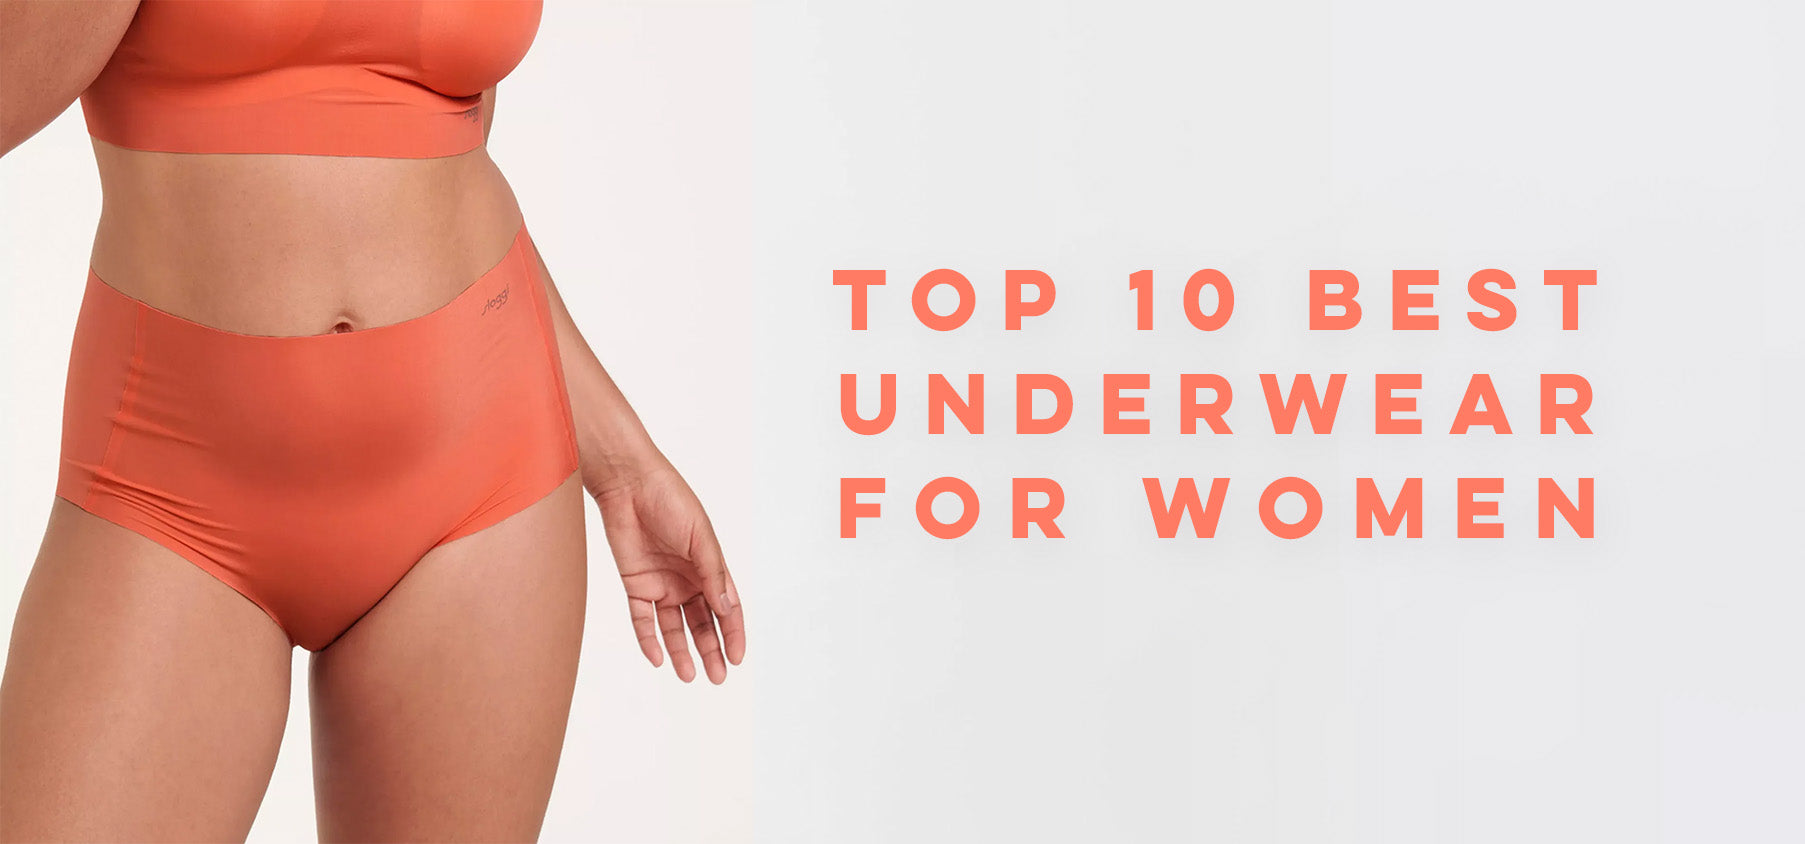 The Best Seamless Underwear - Top 10 No-Show Underwear For